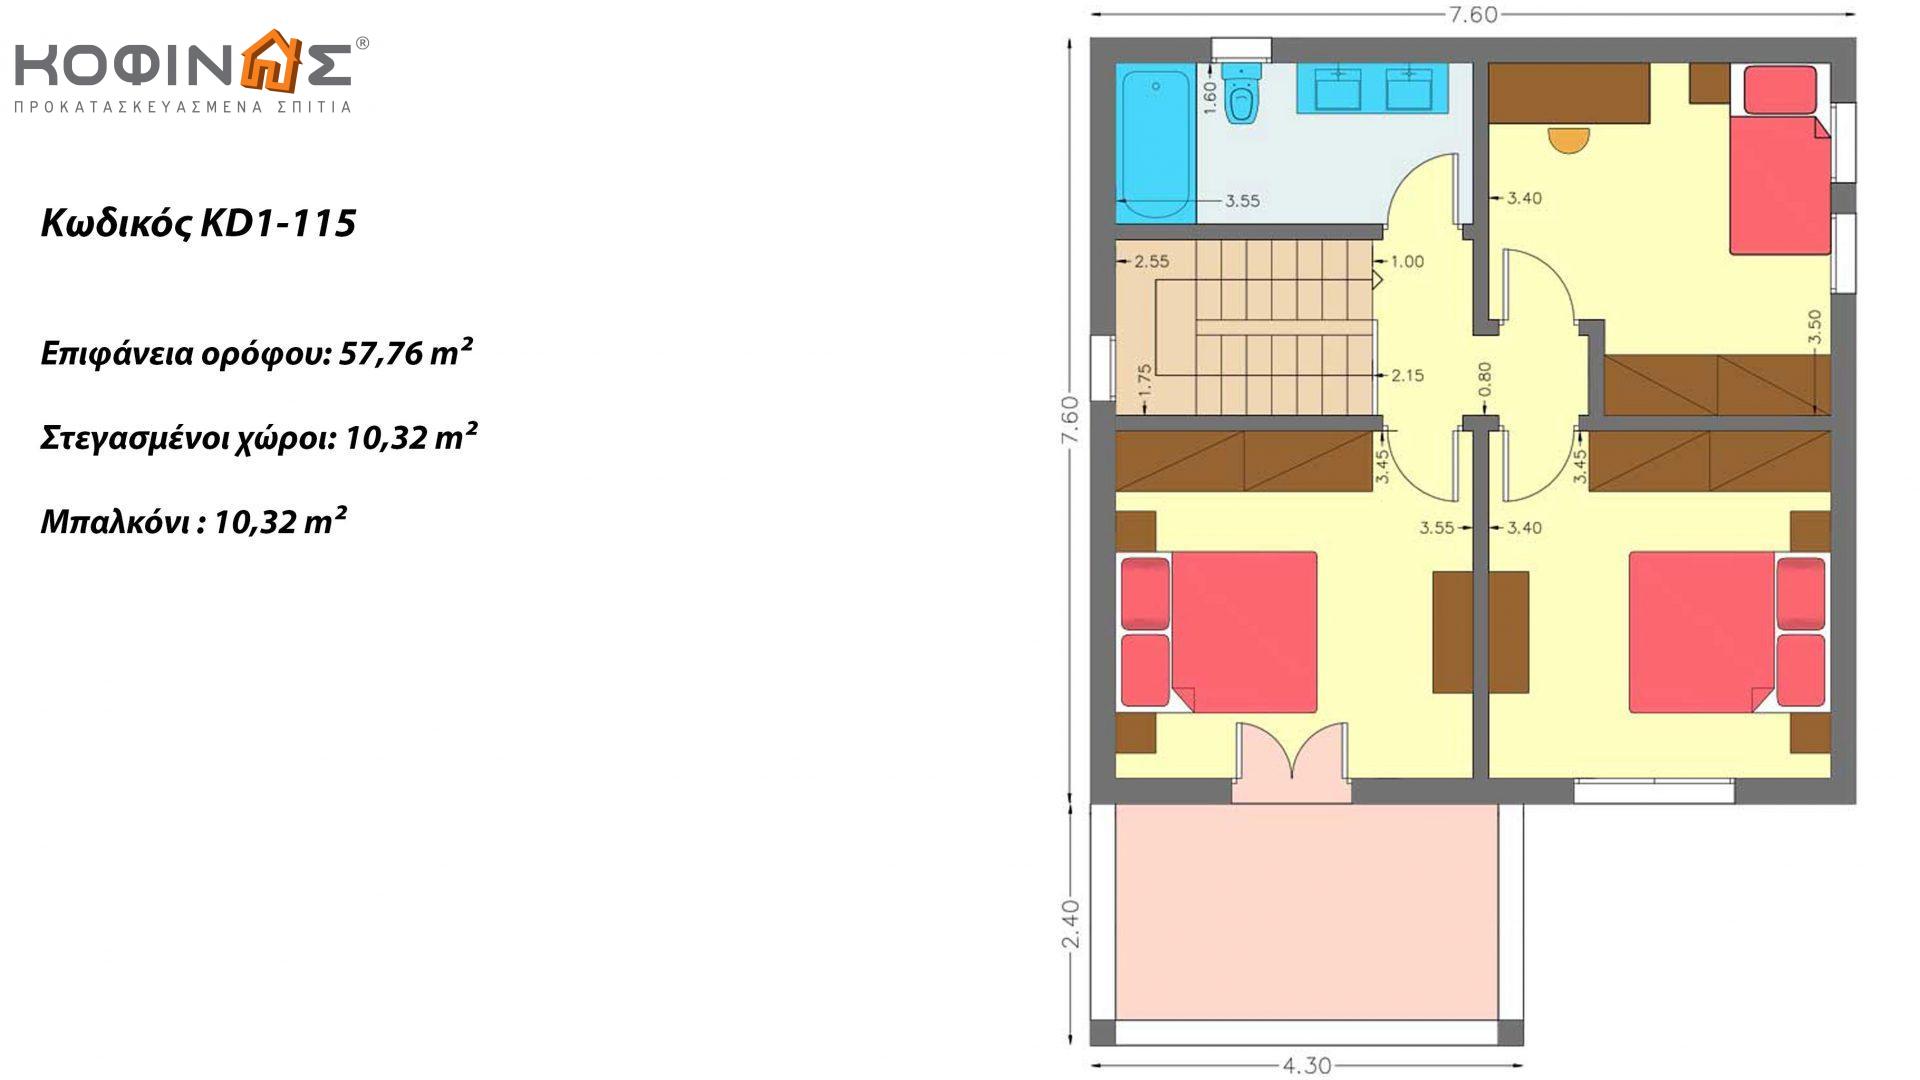 Διώροφη Κατοικία KD1-115, συνολικής επιφάνειας 115,52 τ.μ., συνολική επιφάνεια στεγασμένων χώρων 24,56 τ.μ., μπαλκόνια 10,32 τ.μ.